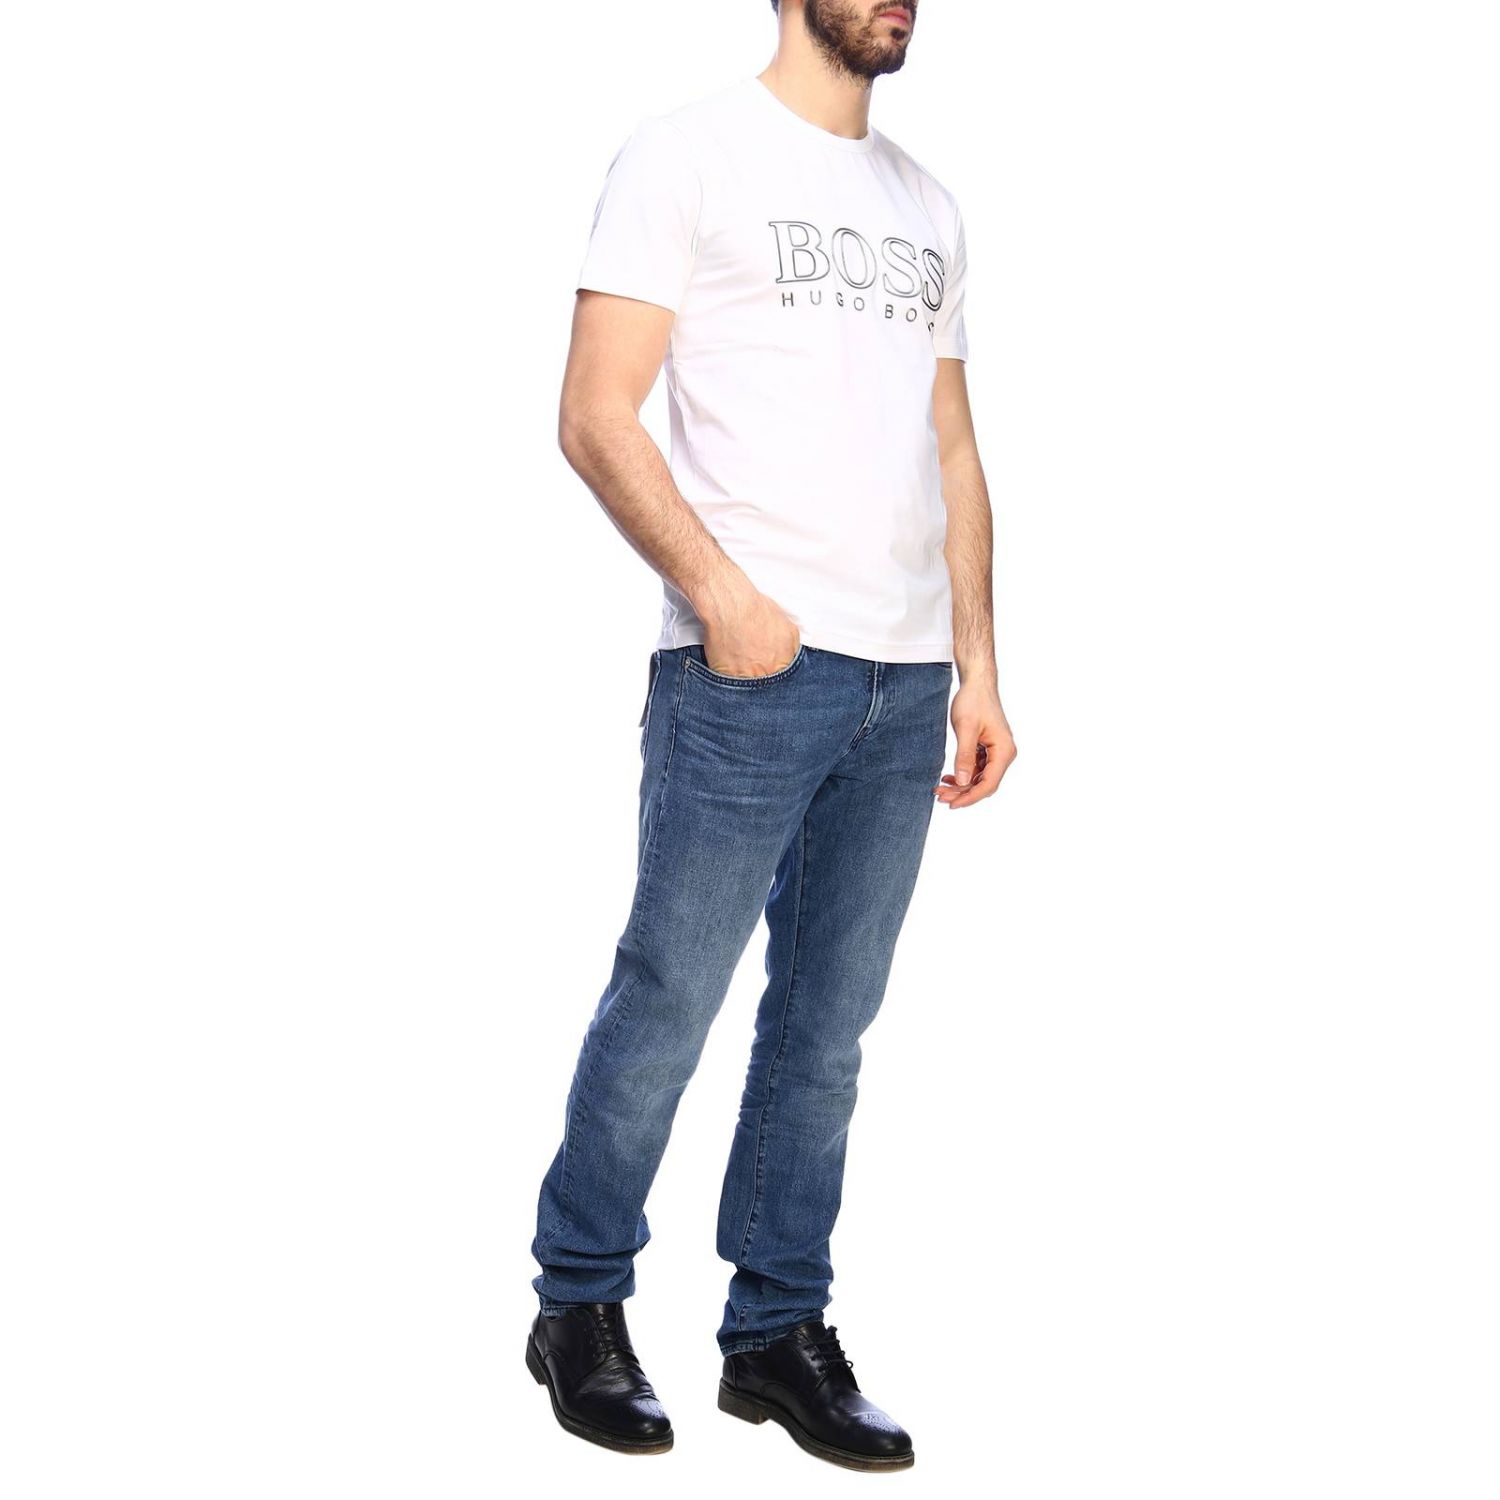 Hugo Boss Outlet: T-shirt men - White | T-Shirt Hugo Boss 10110340 ...